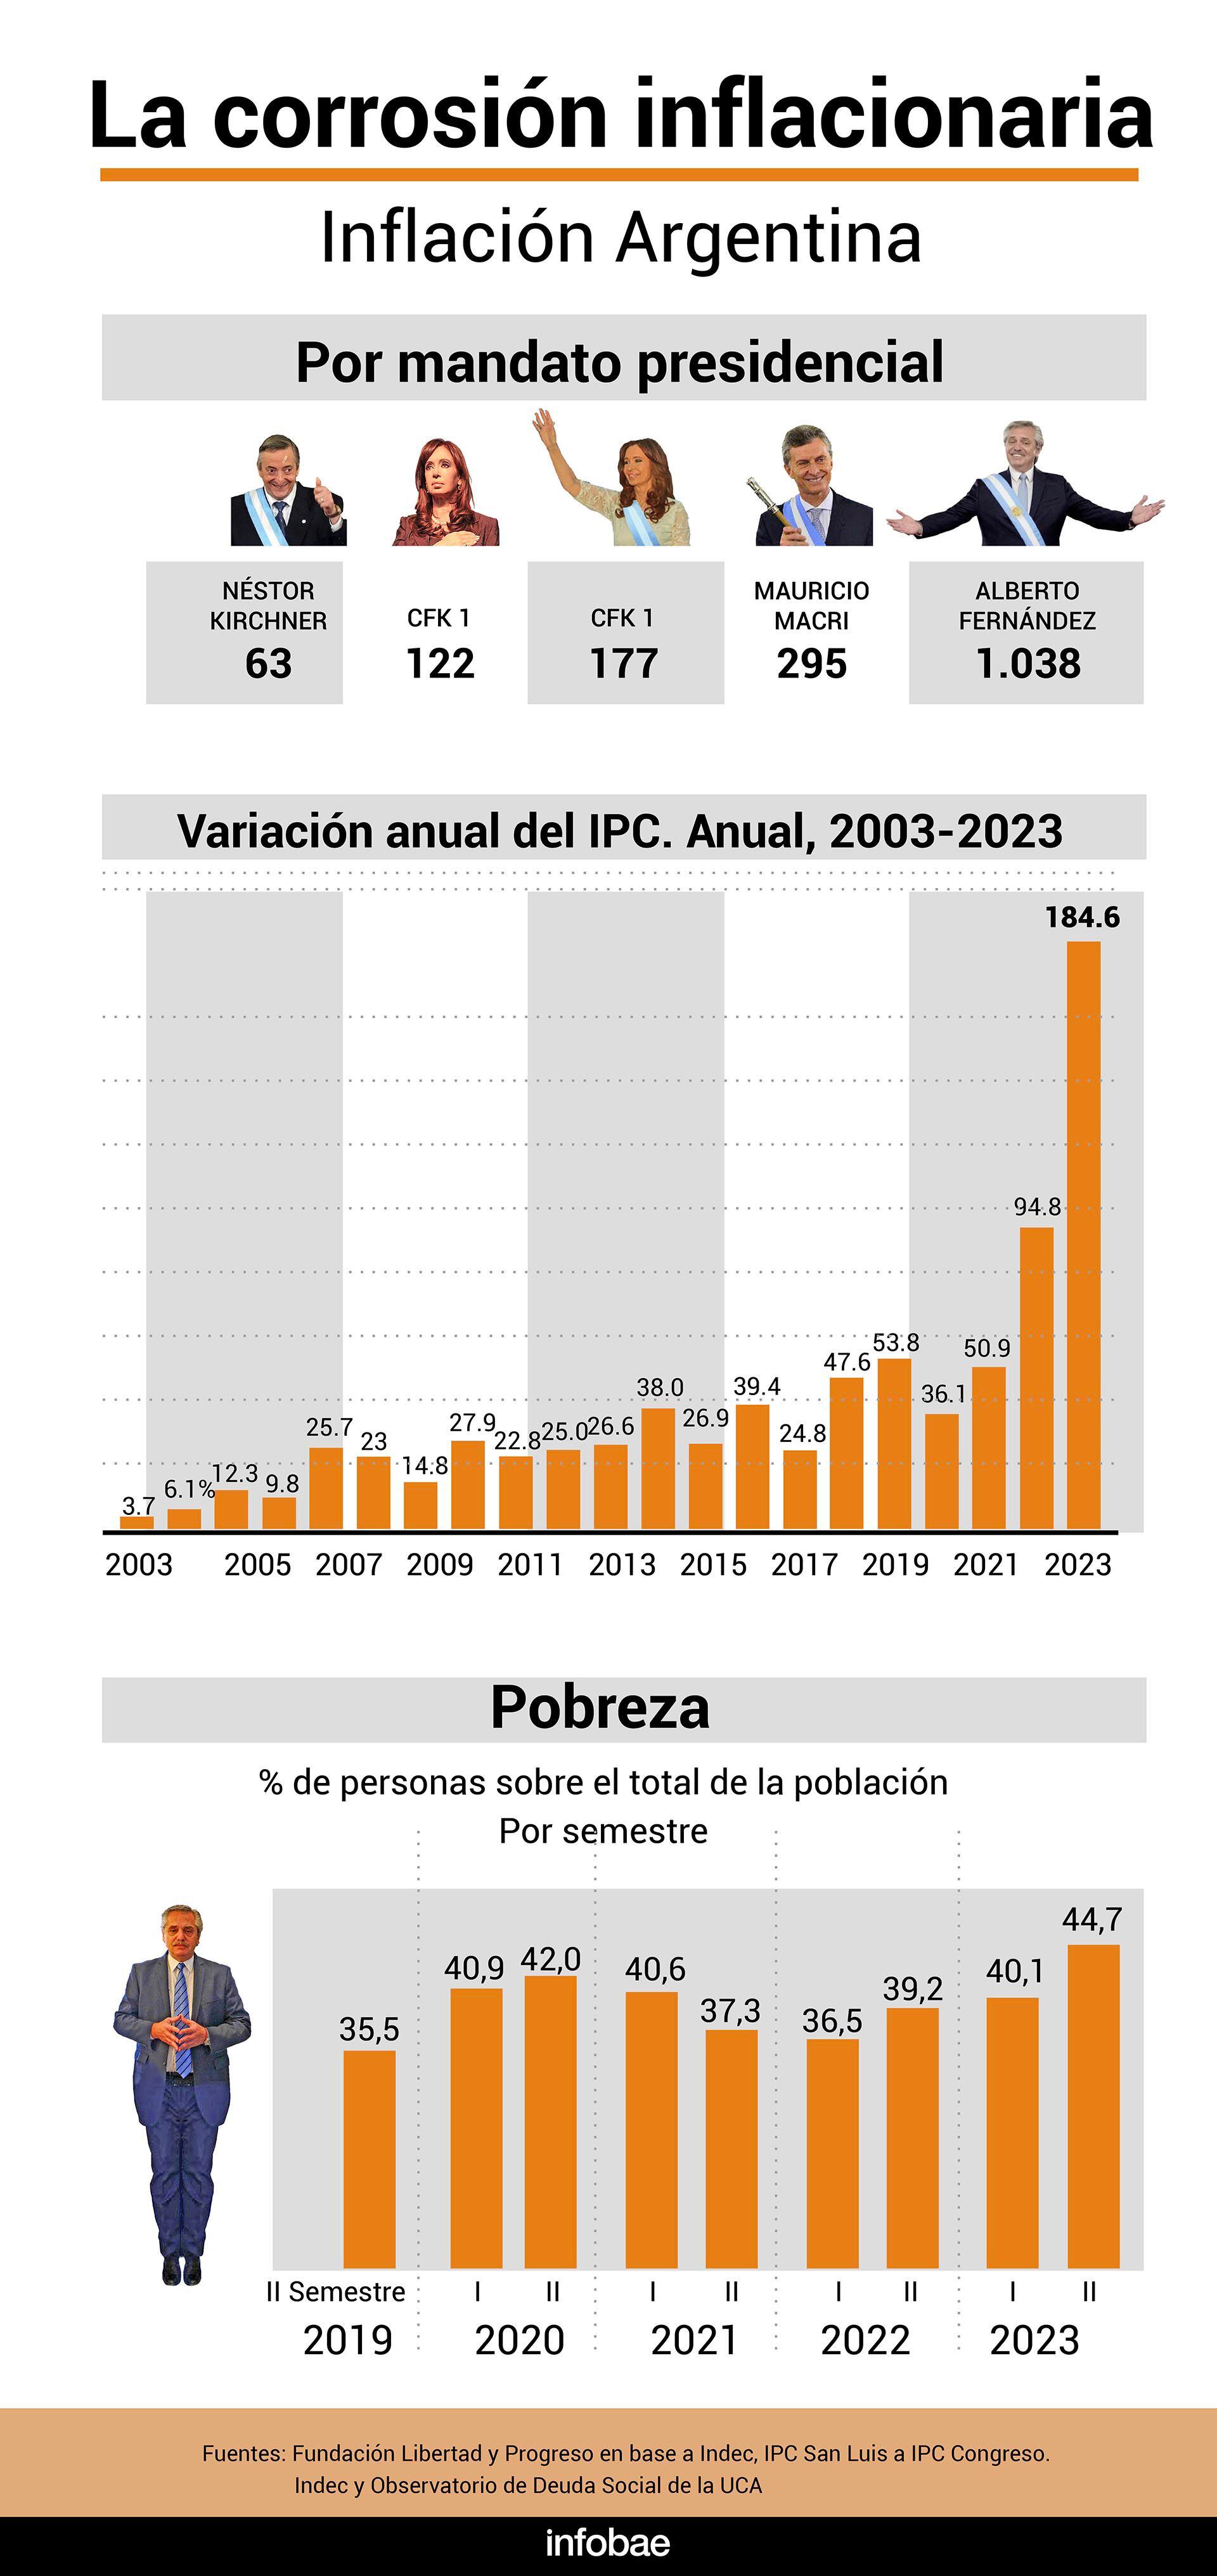 La corrosión inflacionaria inflación Argentina IPC pobreza infografia 2